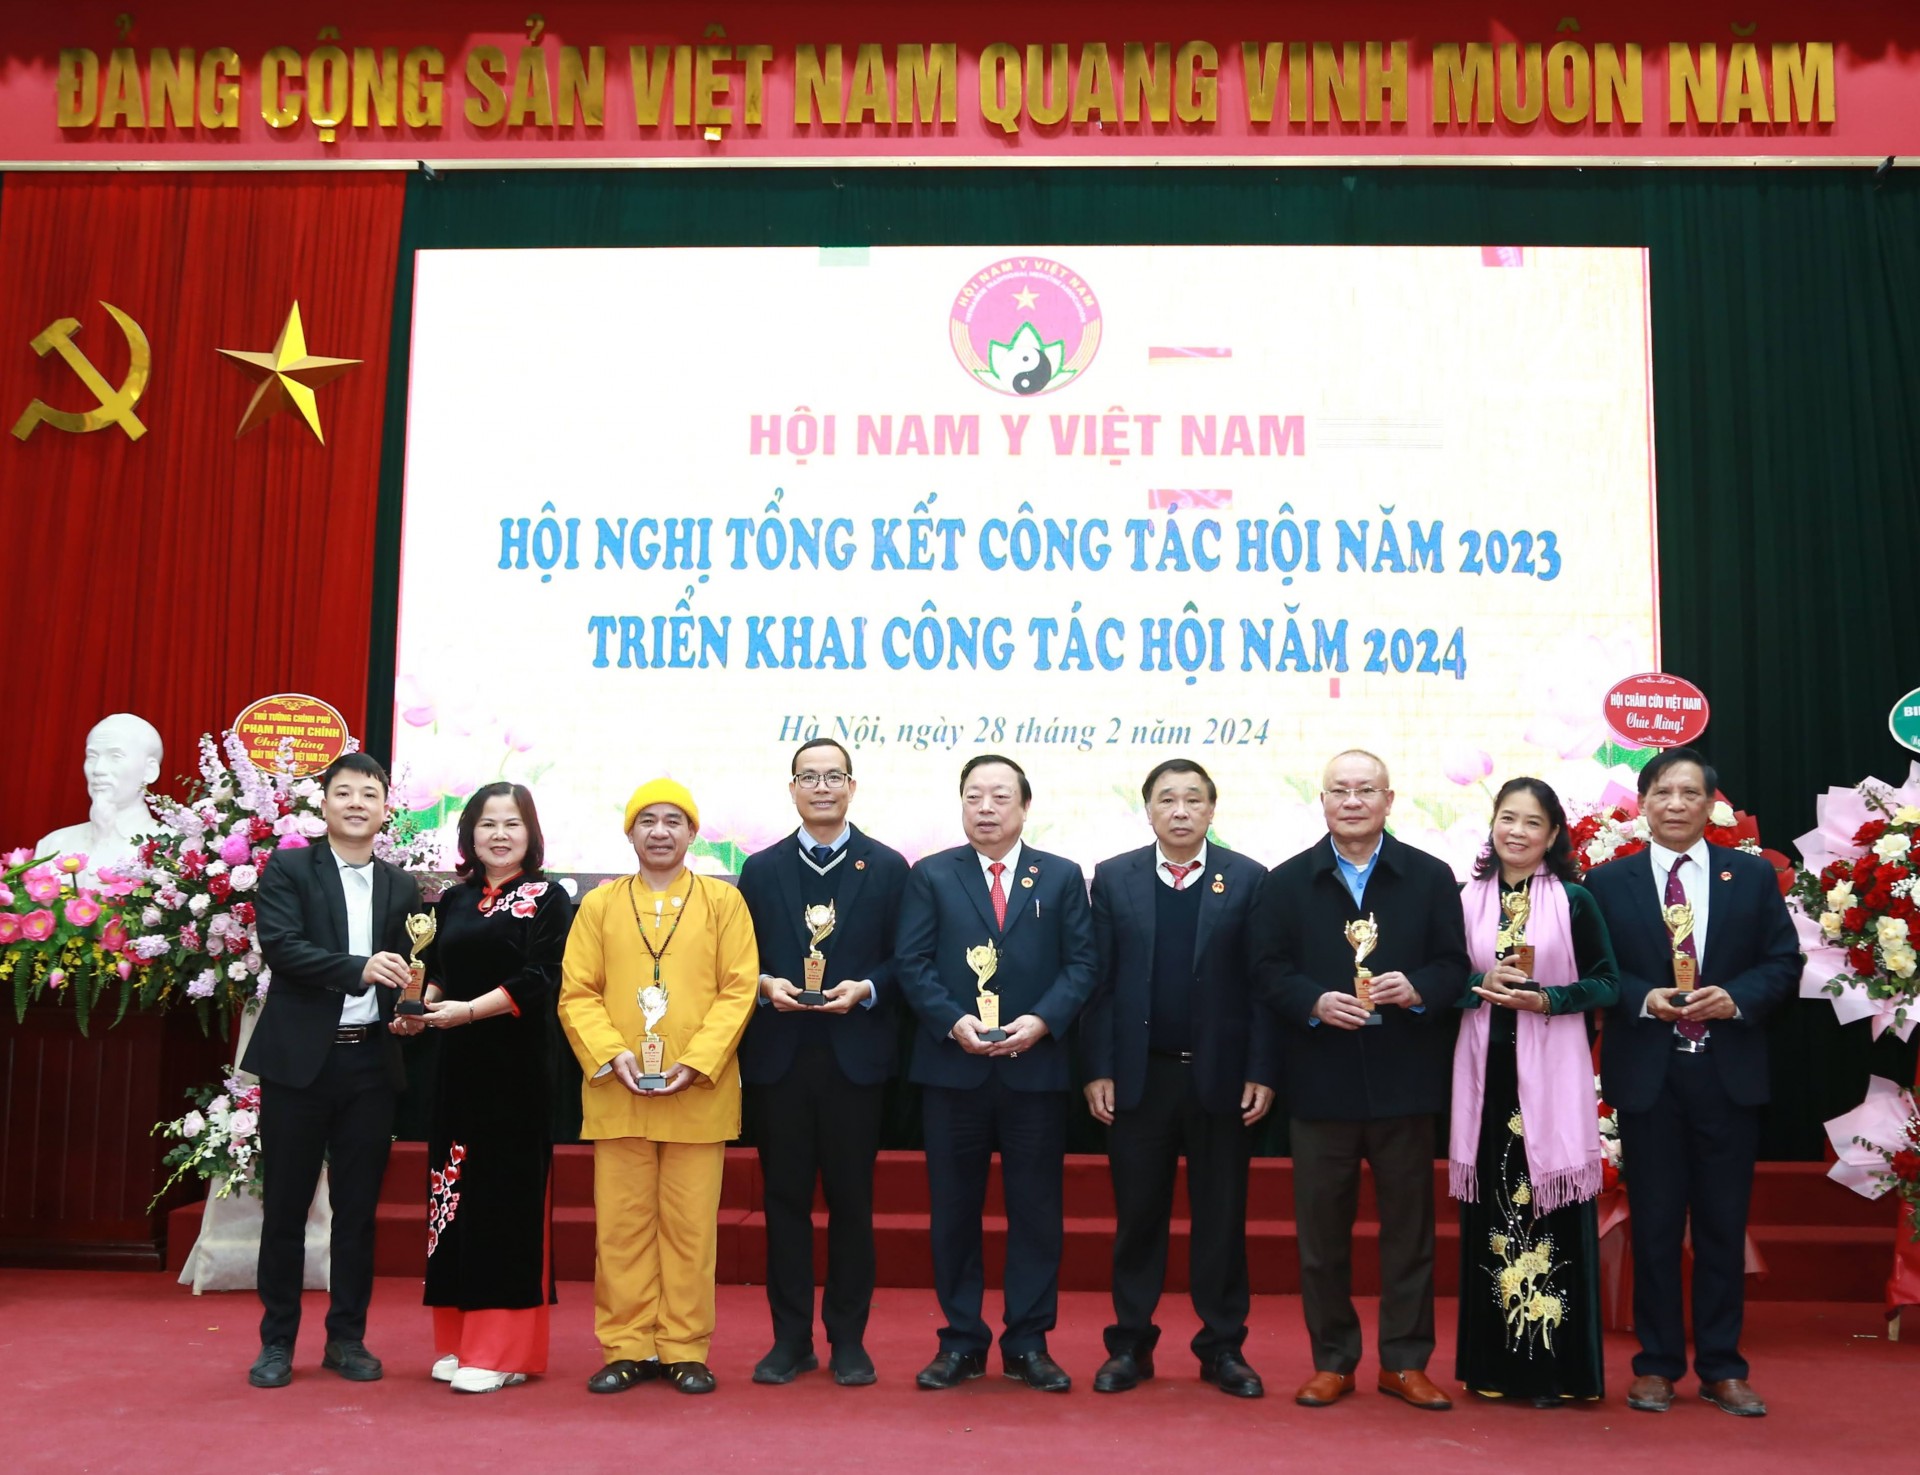 Hà Nội: Hội Nam Y Việt Nam tổ chức Hội nghị Tổng kết Công tác Hội năm 2023 và Triển khai nhiệm vụ công tác năm 2024 Khu vực phía Bắc